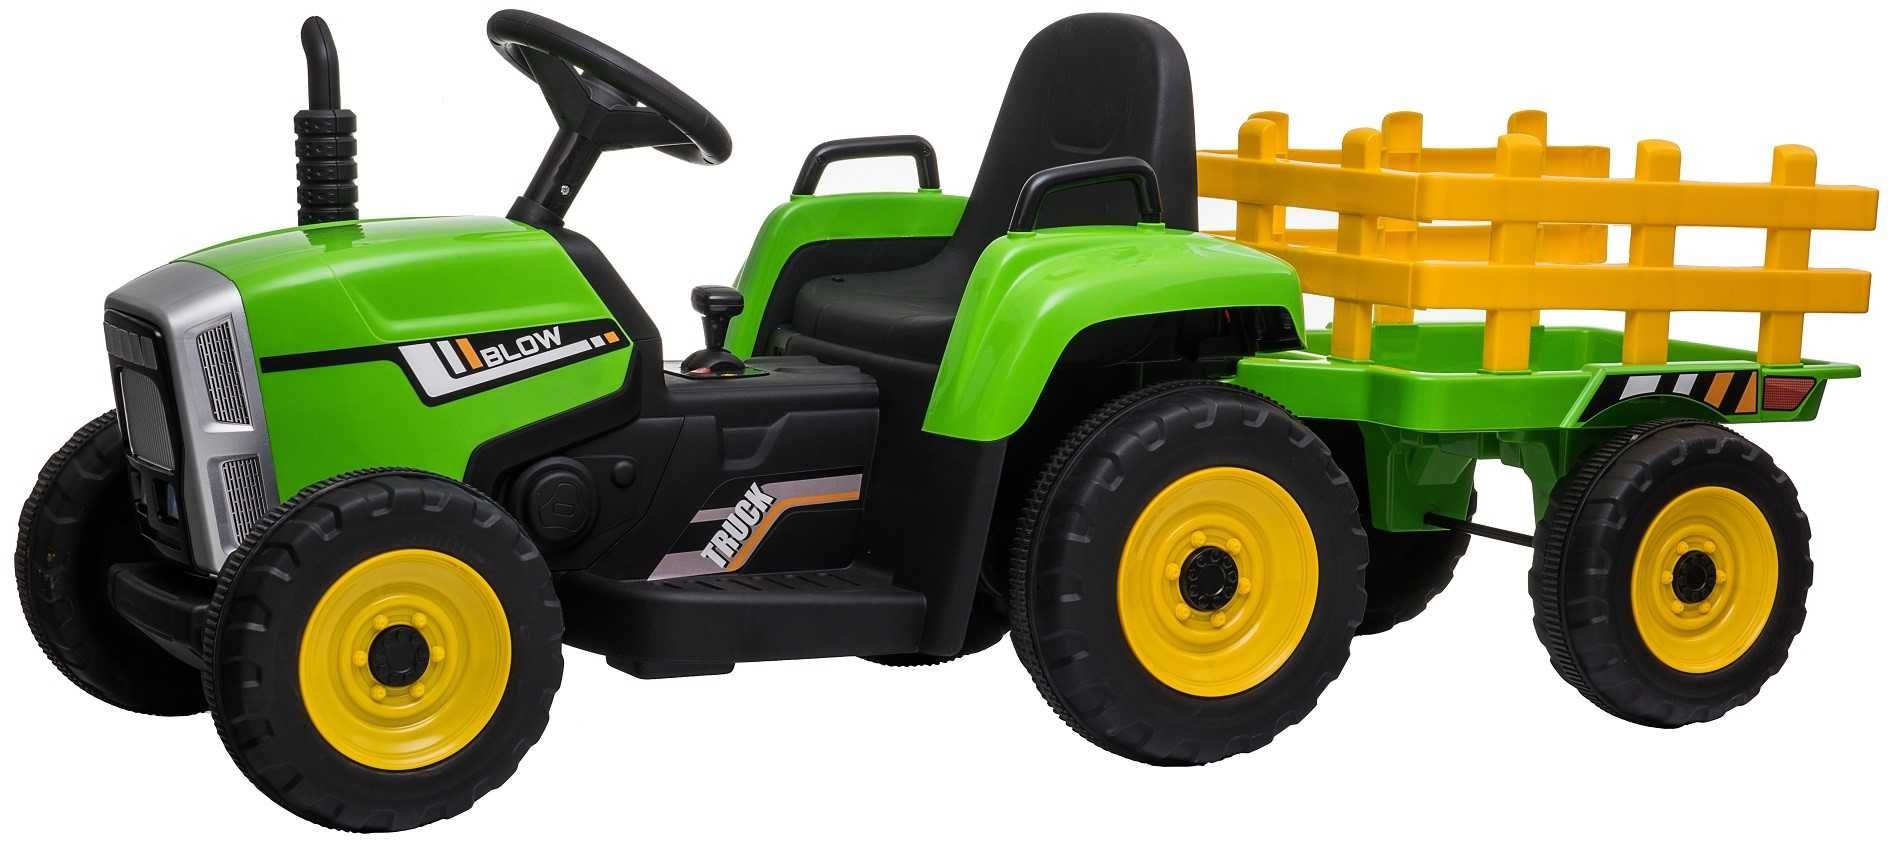 Tractoras electric cu remorca copii 2-6 ani Blow 60W, Roti Moi Verde